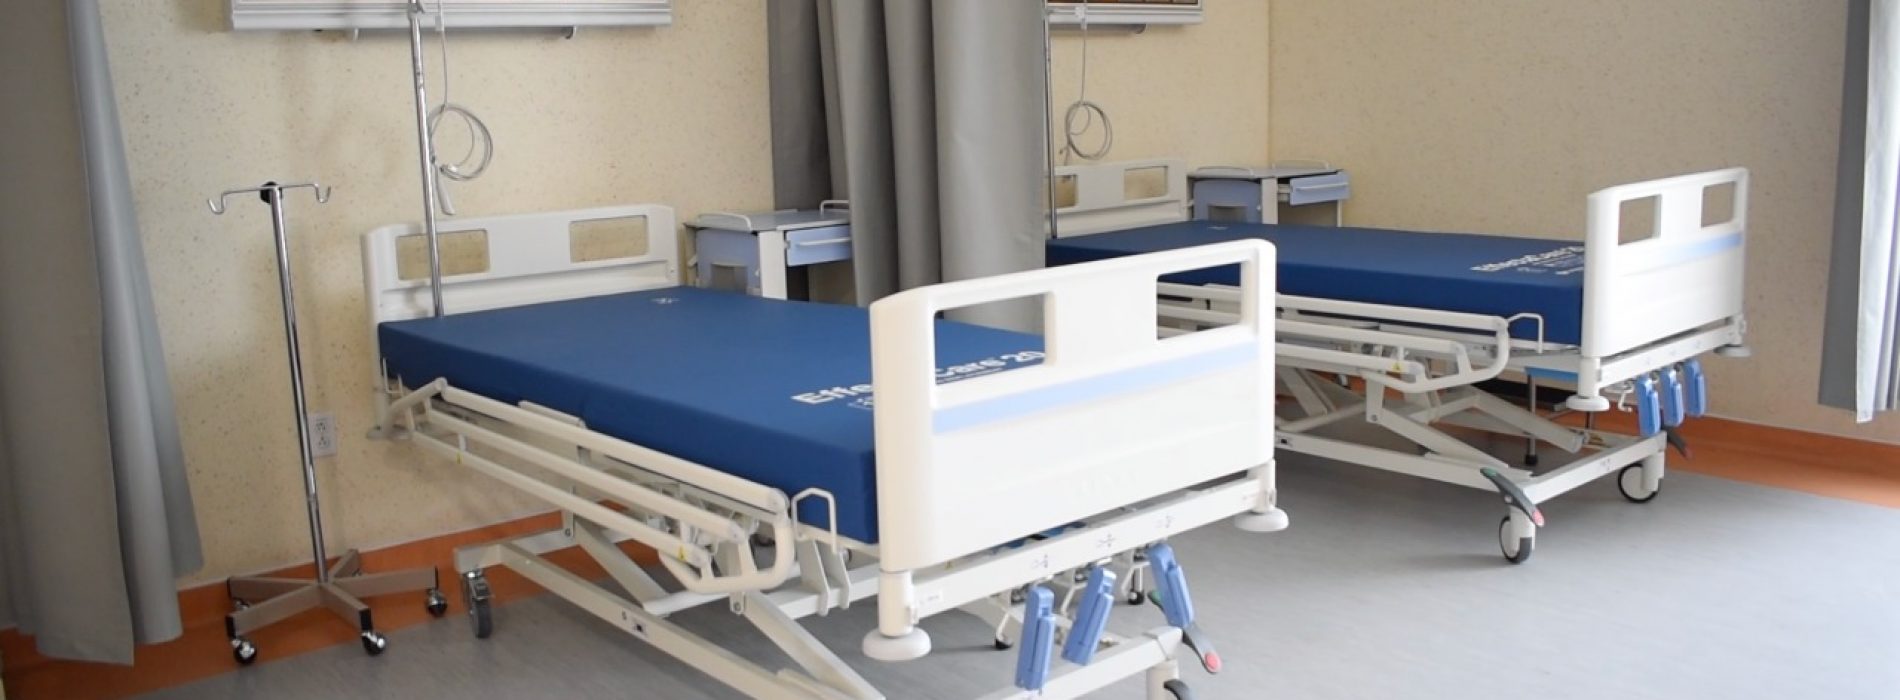 Gobiernos estatal y federal fortalecen al Sector Salud con más ventiladores, camas y personal médico